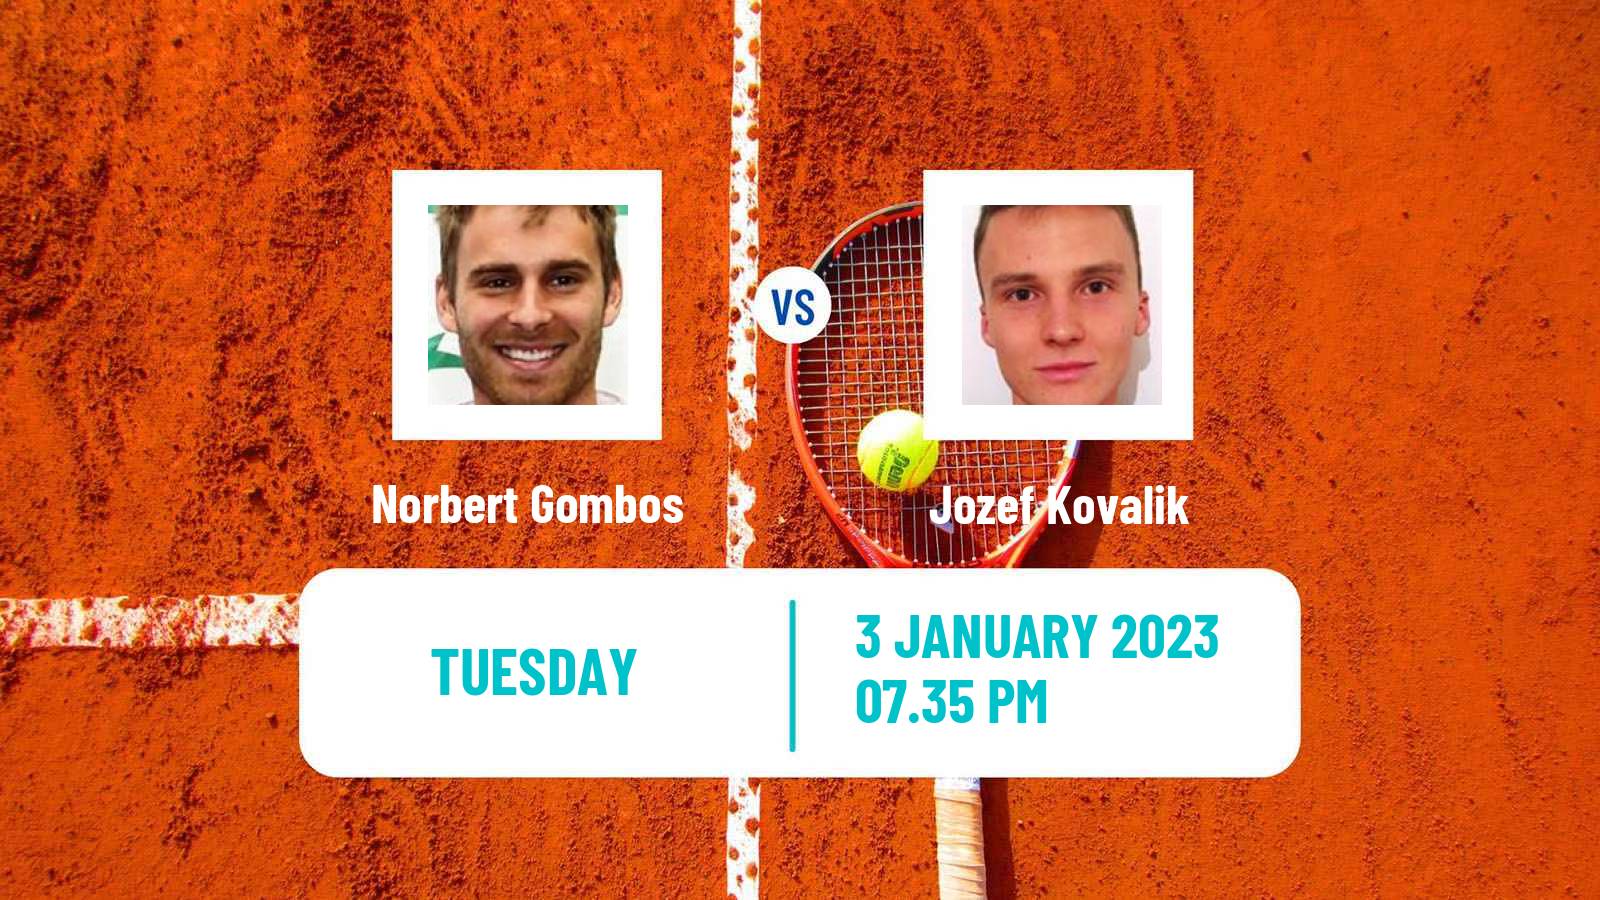 Tennis ATP Challenger Norbert Gombos - Jozef Kovalik